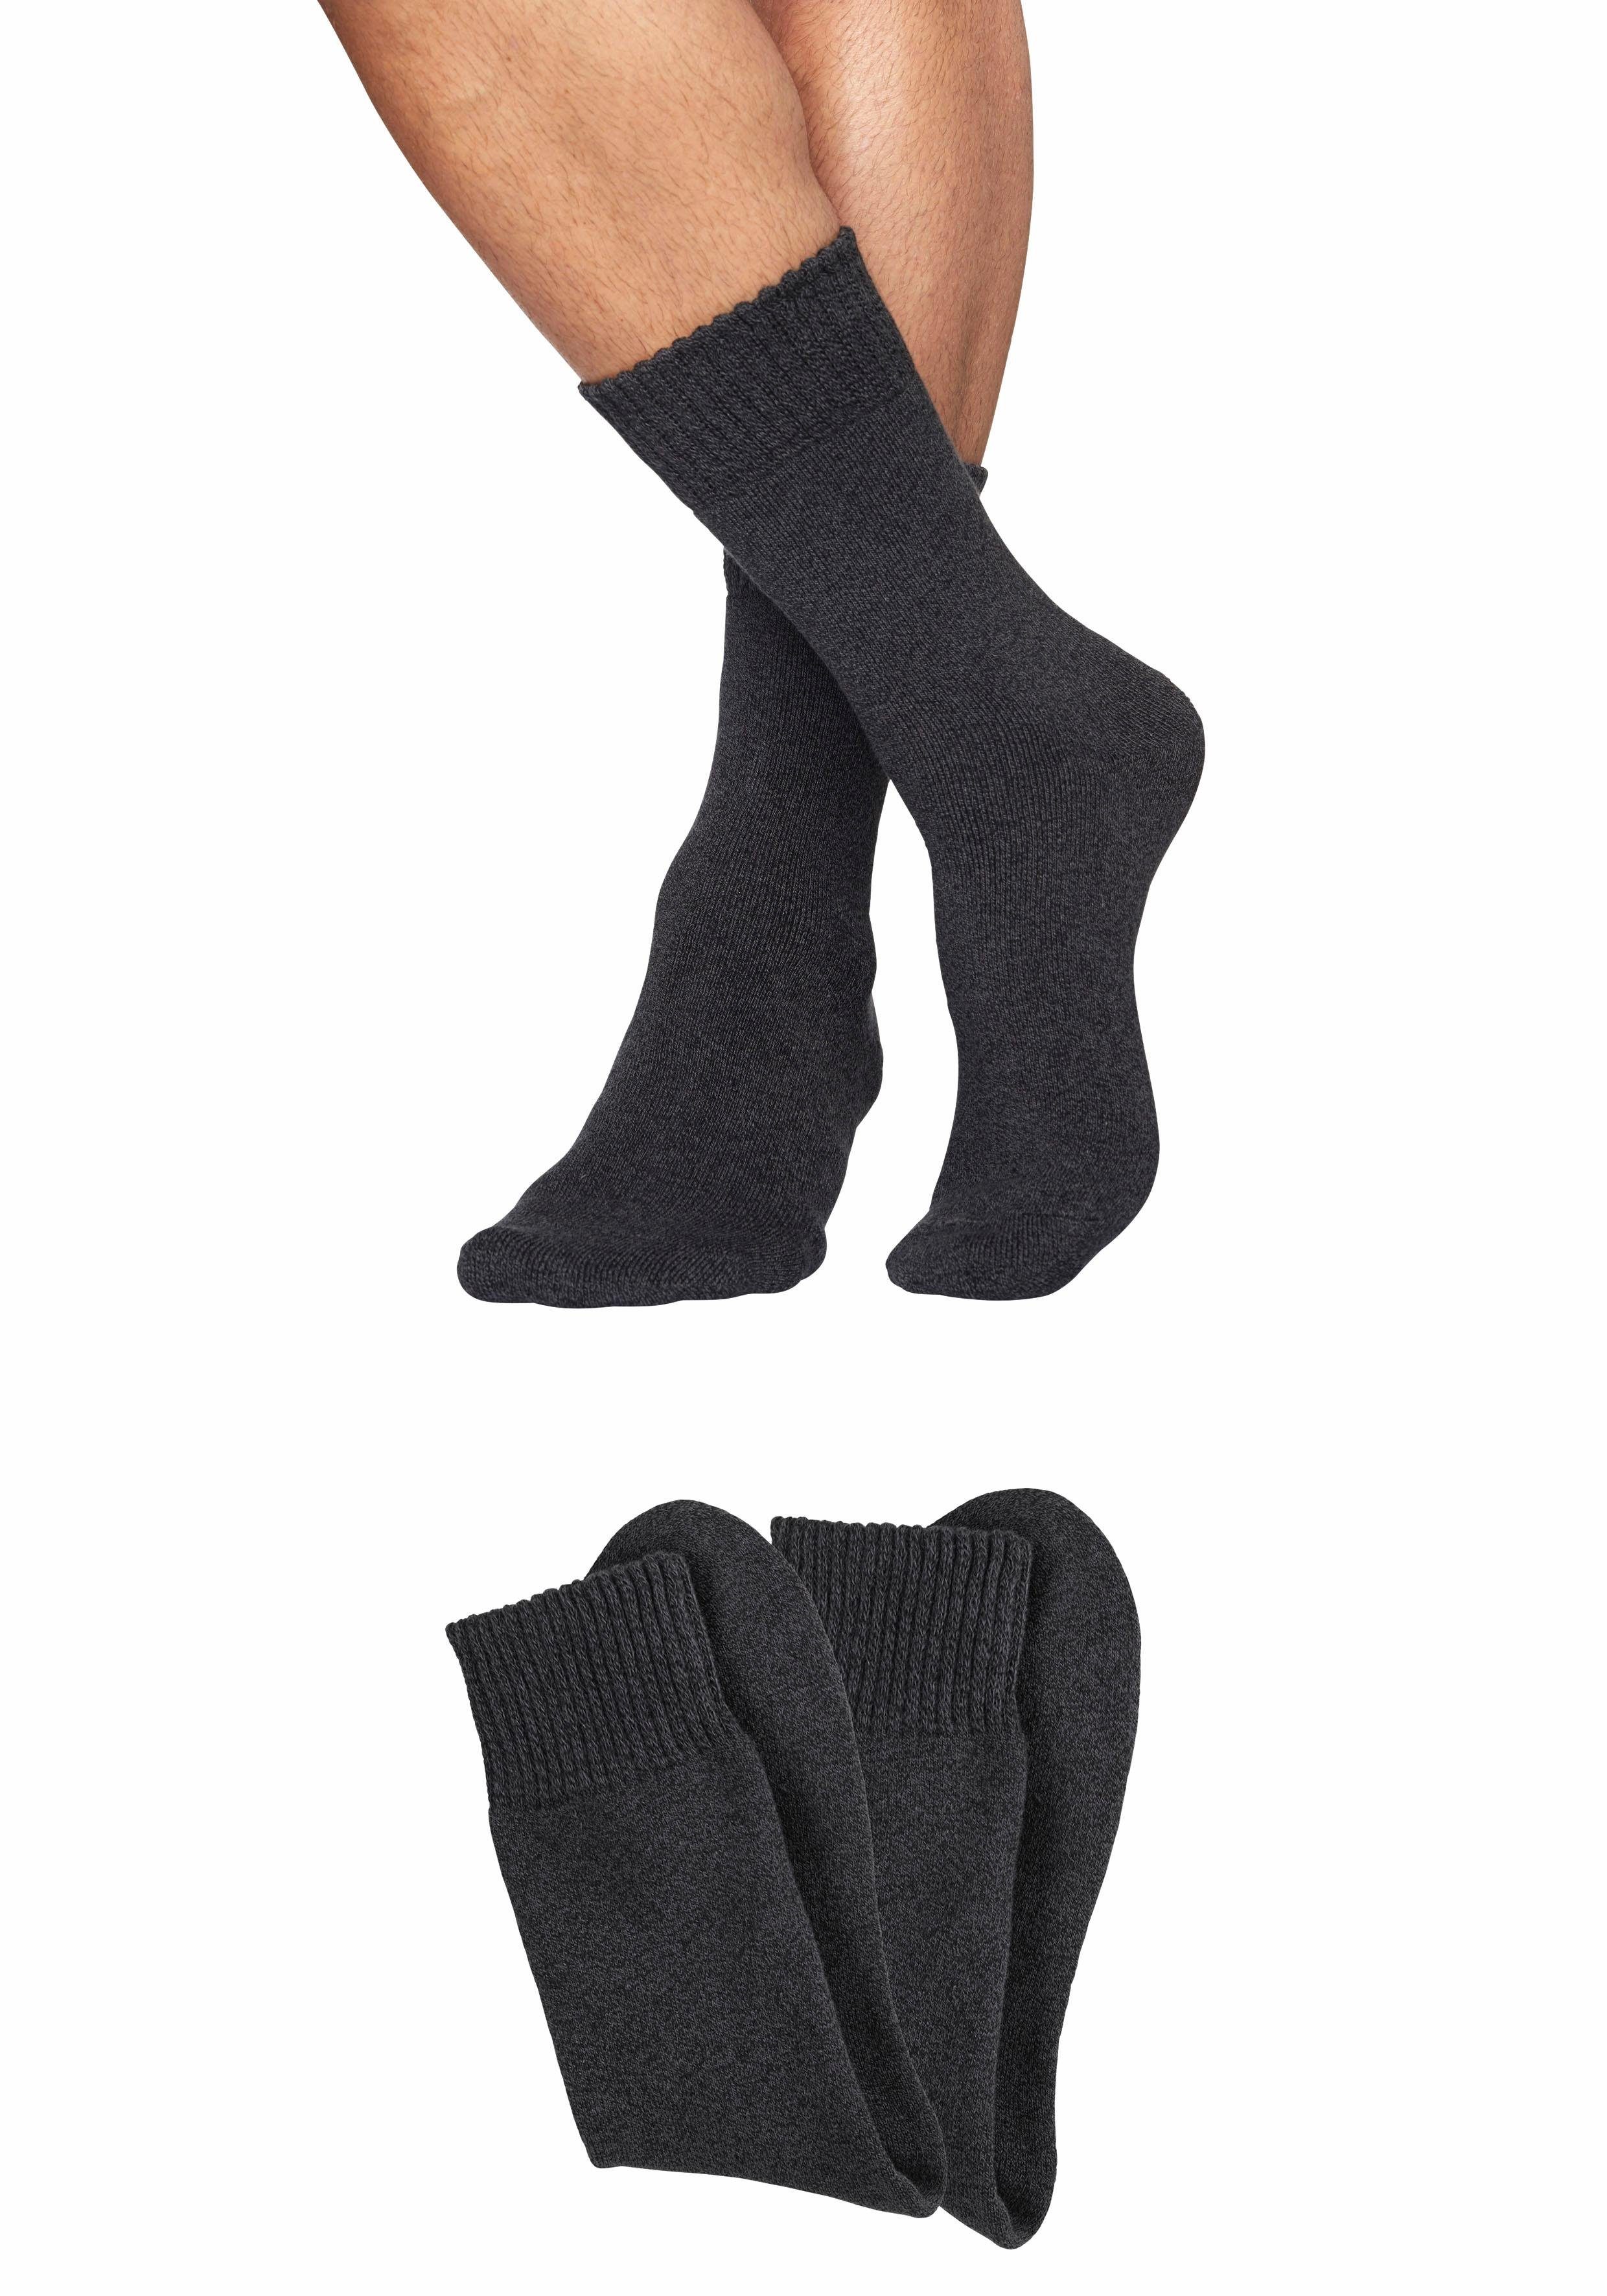 Otto - Sympatico NU 15% KORTING: Sympatico volpluchen sokken (2 paar) met comfortabele boord